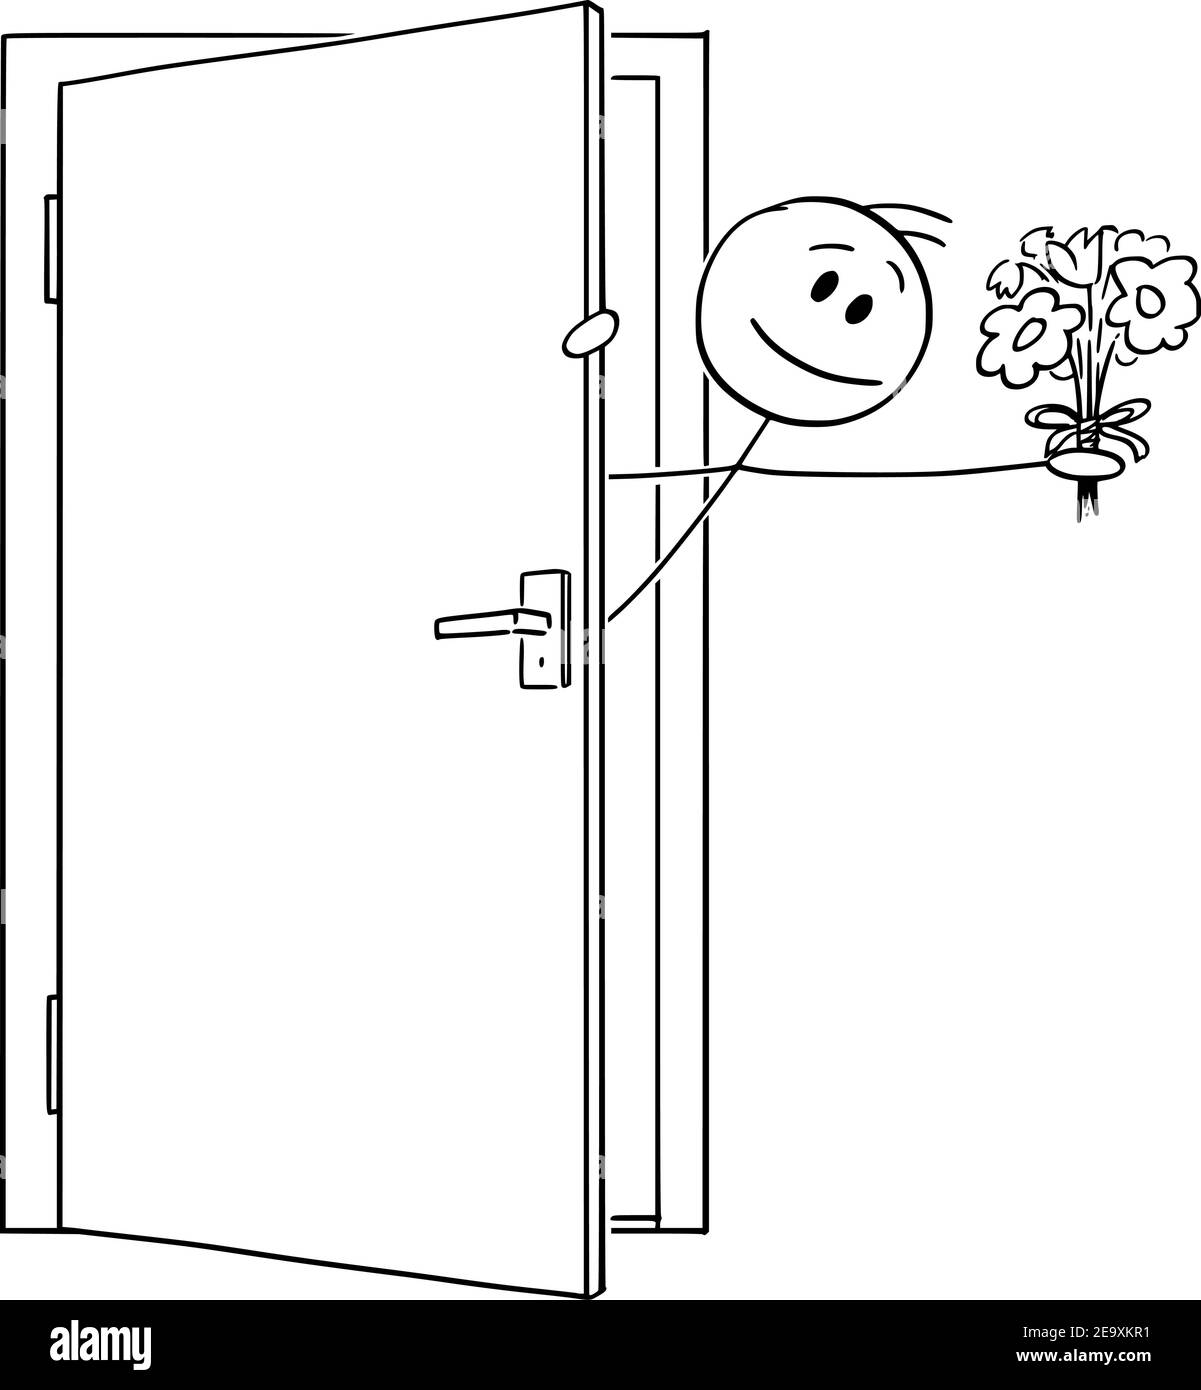 Homme ou amant entrant ou sortant de la porte avec des fleurs de Saint-Valentin , dessin animé vectoriel chiffre ou illustration de caractère. Illustration de Vecteur